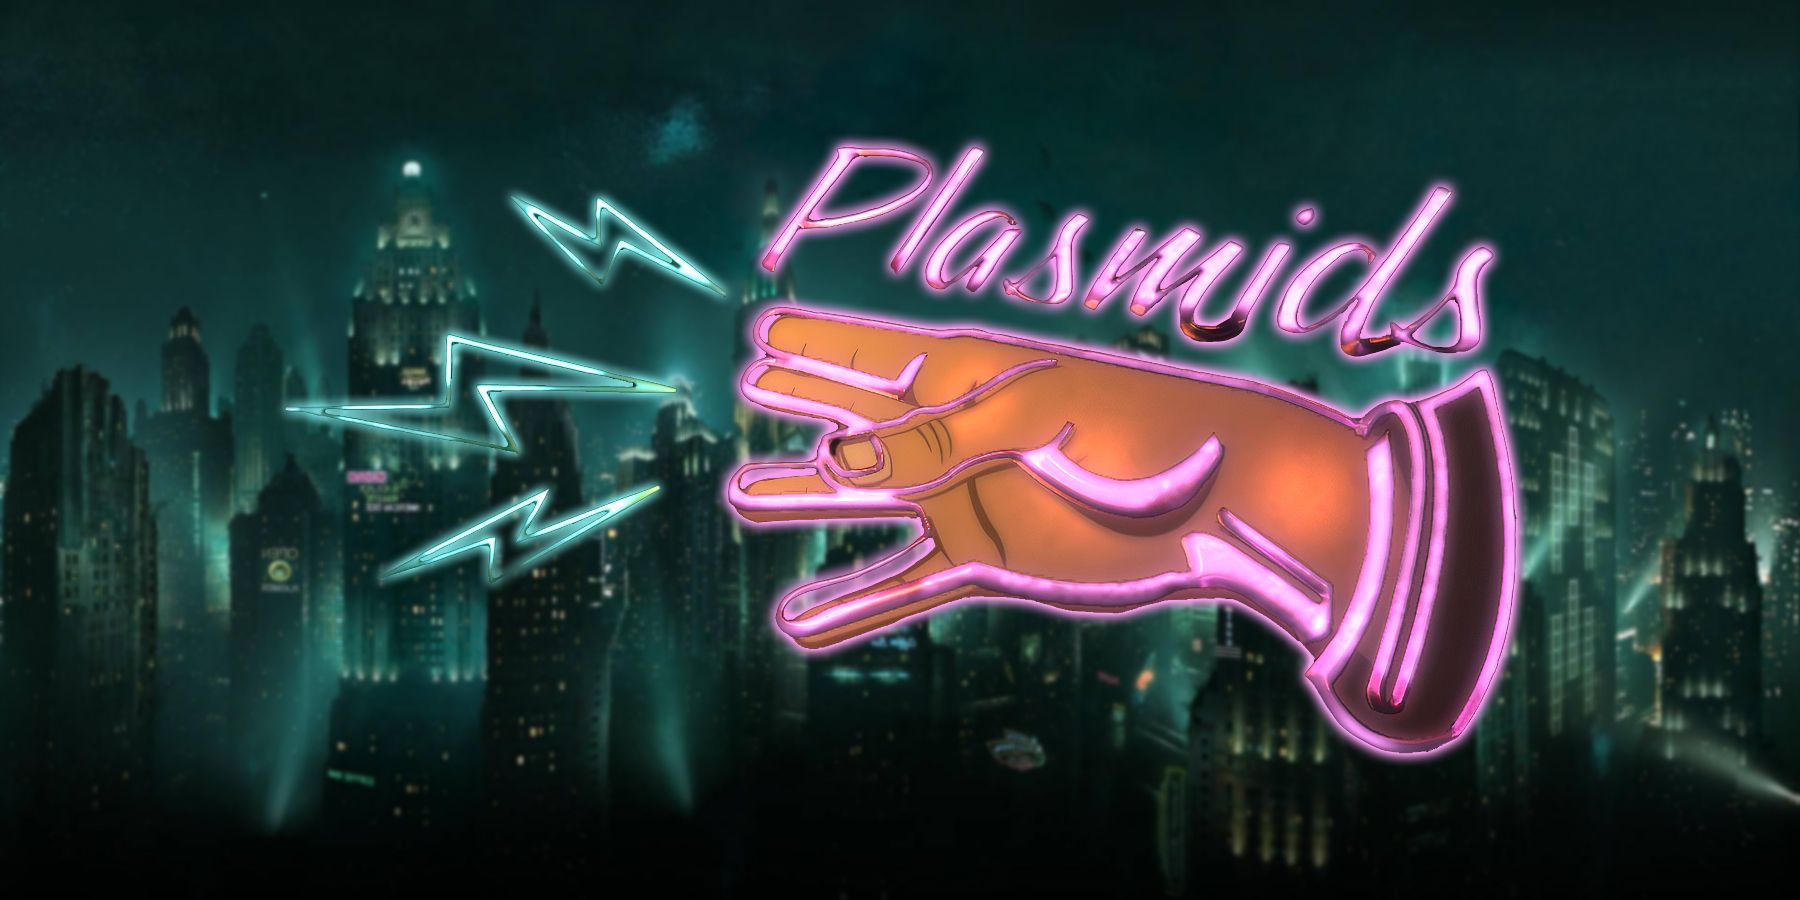 Plasmids neon sign over BioShock Rapture background